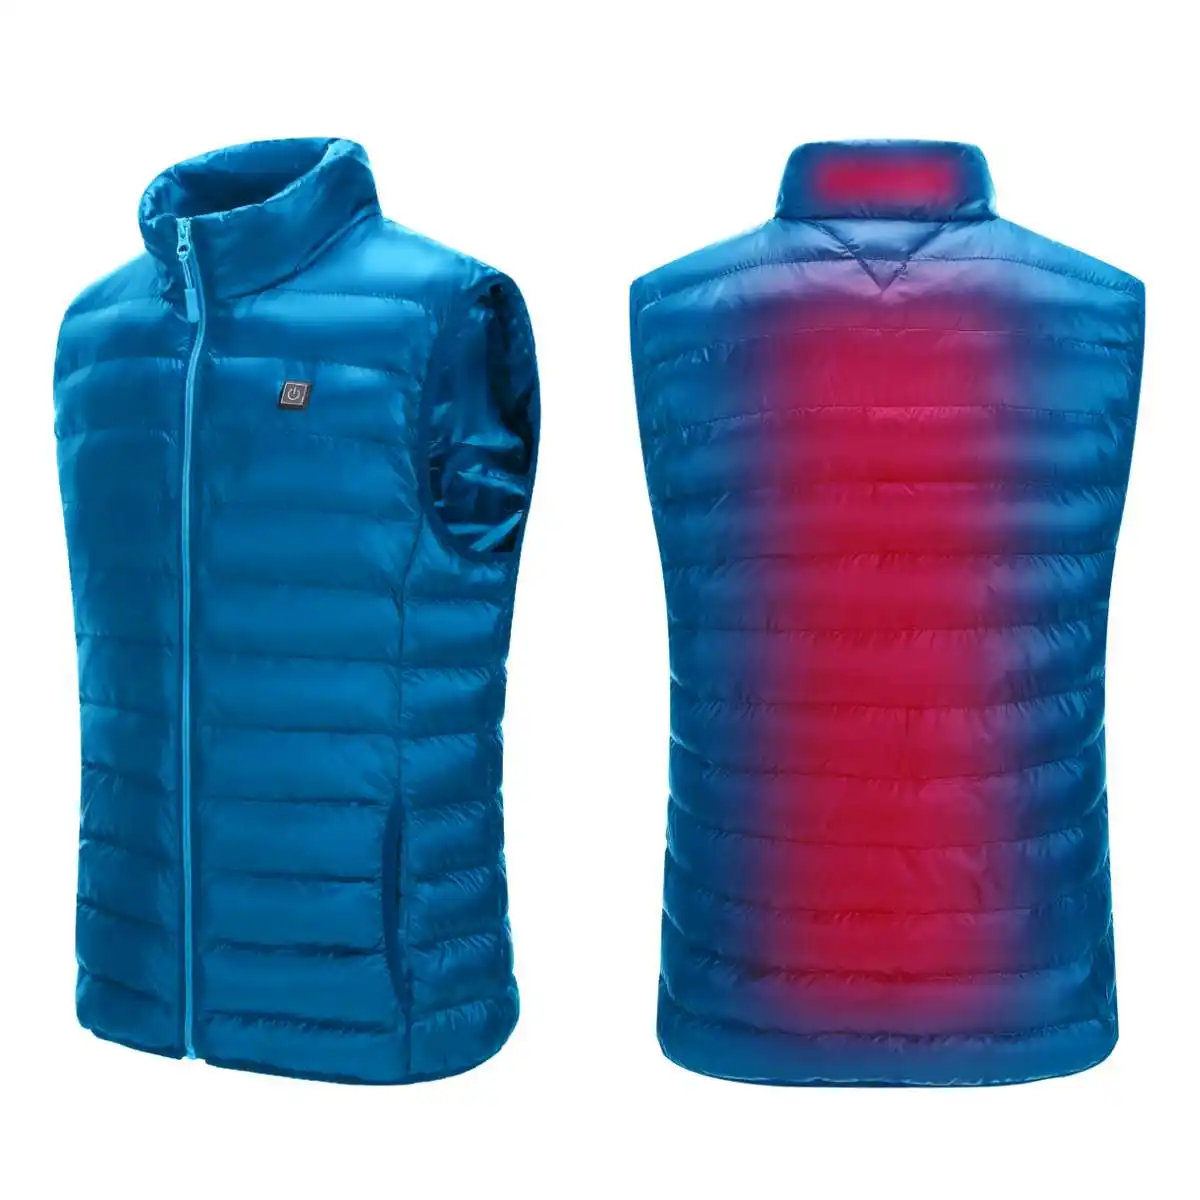 Для мужчин и женщин Открытый USB Графен зарядки отопление жилет куртка зима гибкий электрический тепловой одежда жилет Рыбалка Пешие прогулки - Цвет: Blue